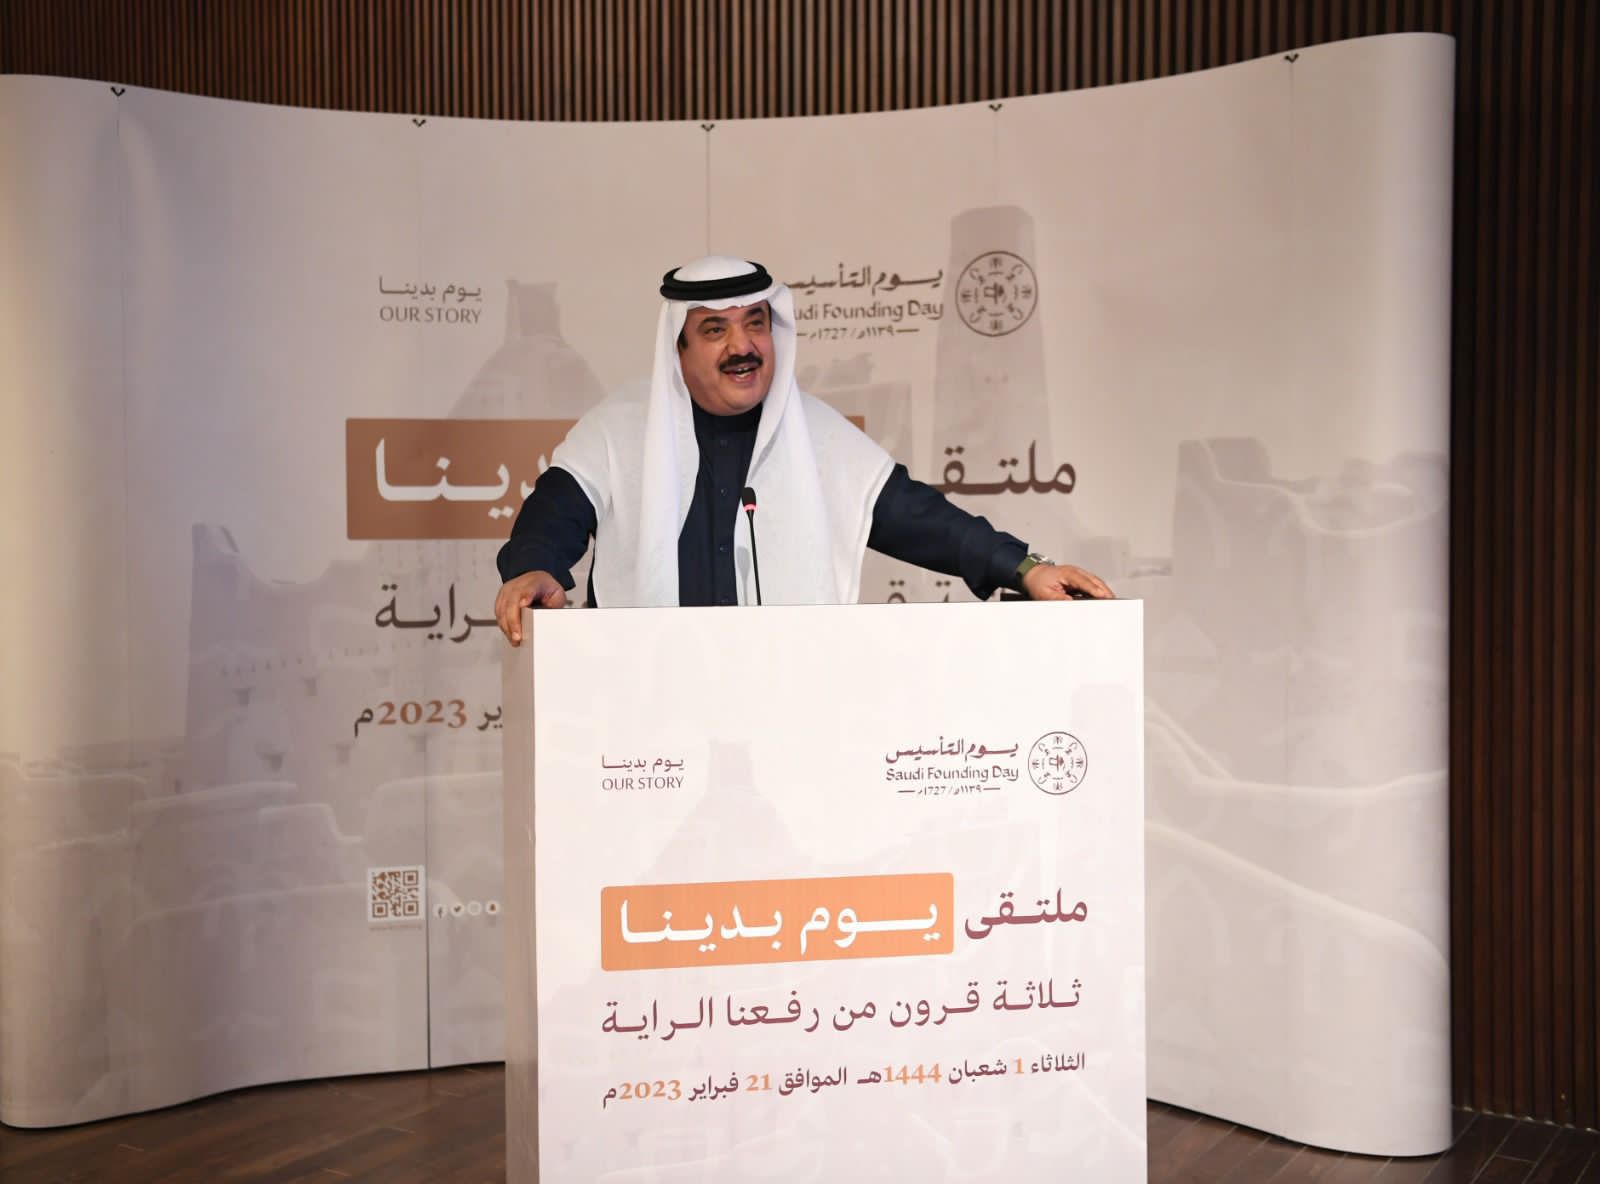 مركز الملك عبد العزيز للحوار الوطني يستعرض أبرز الملامح التاريخية للدولة السعودية